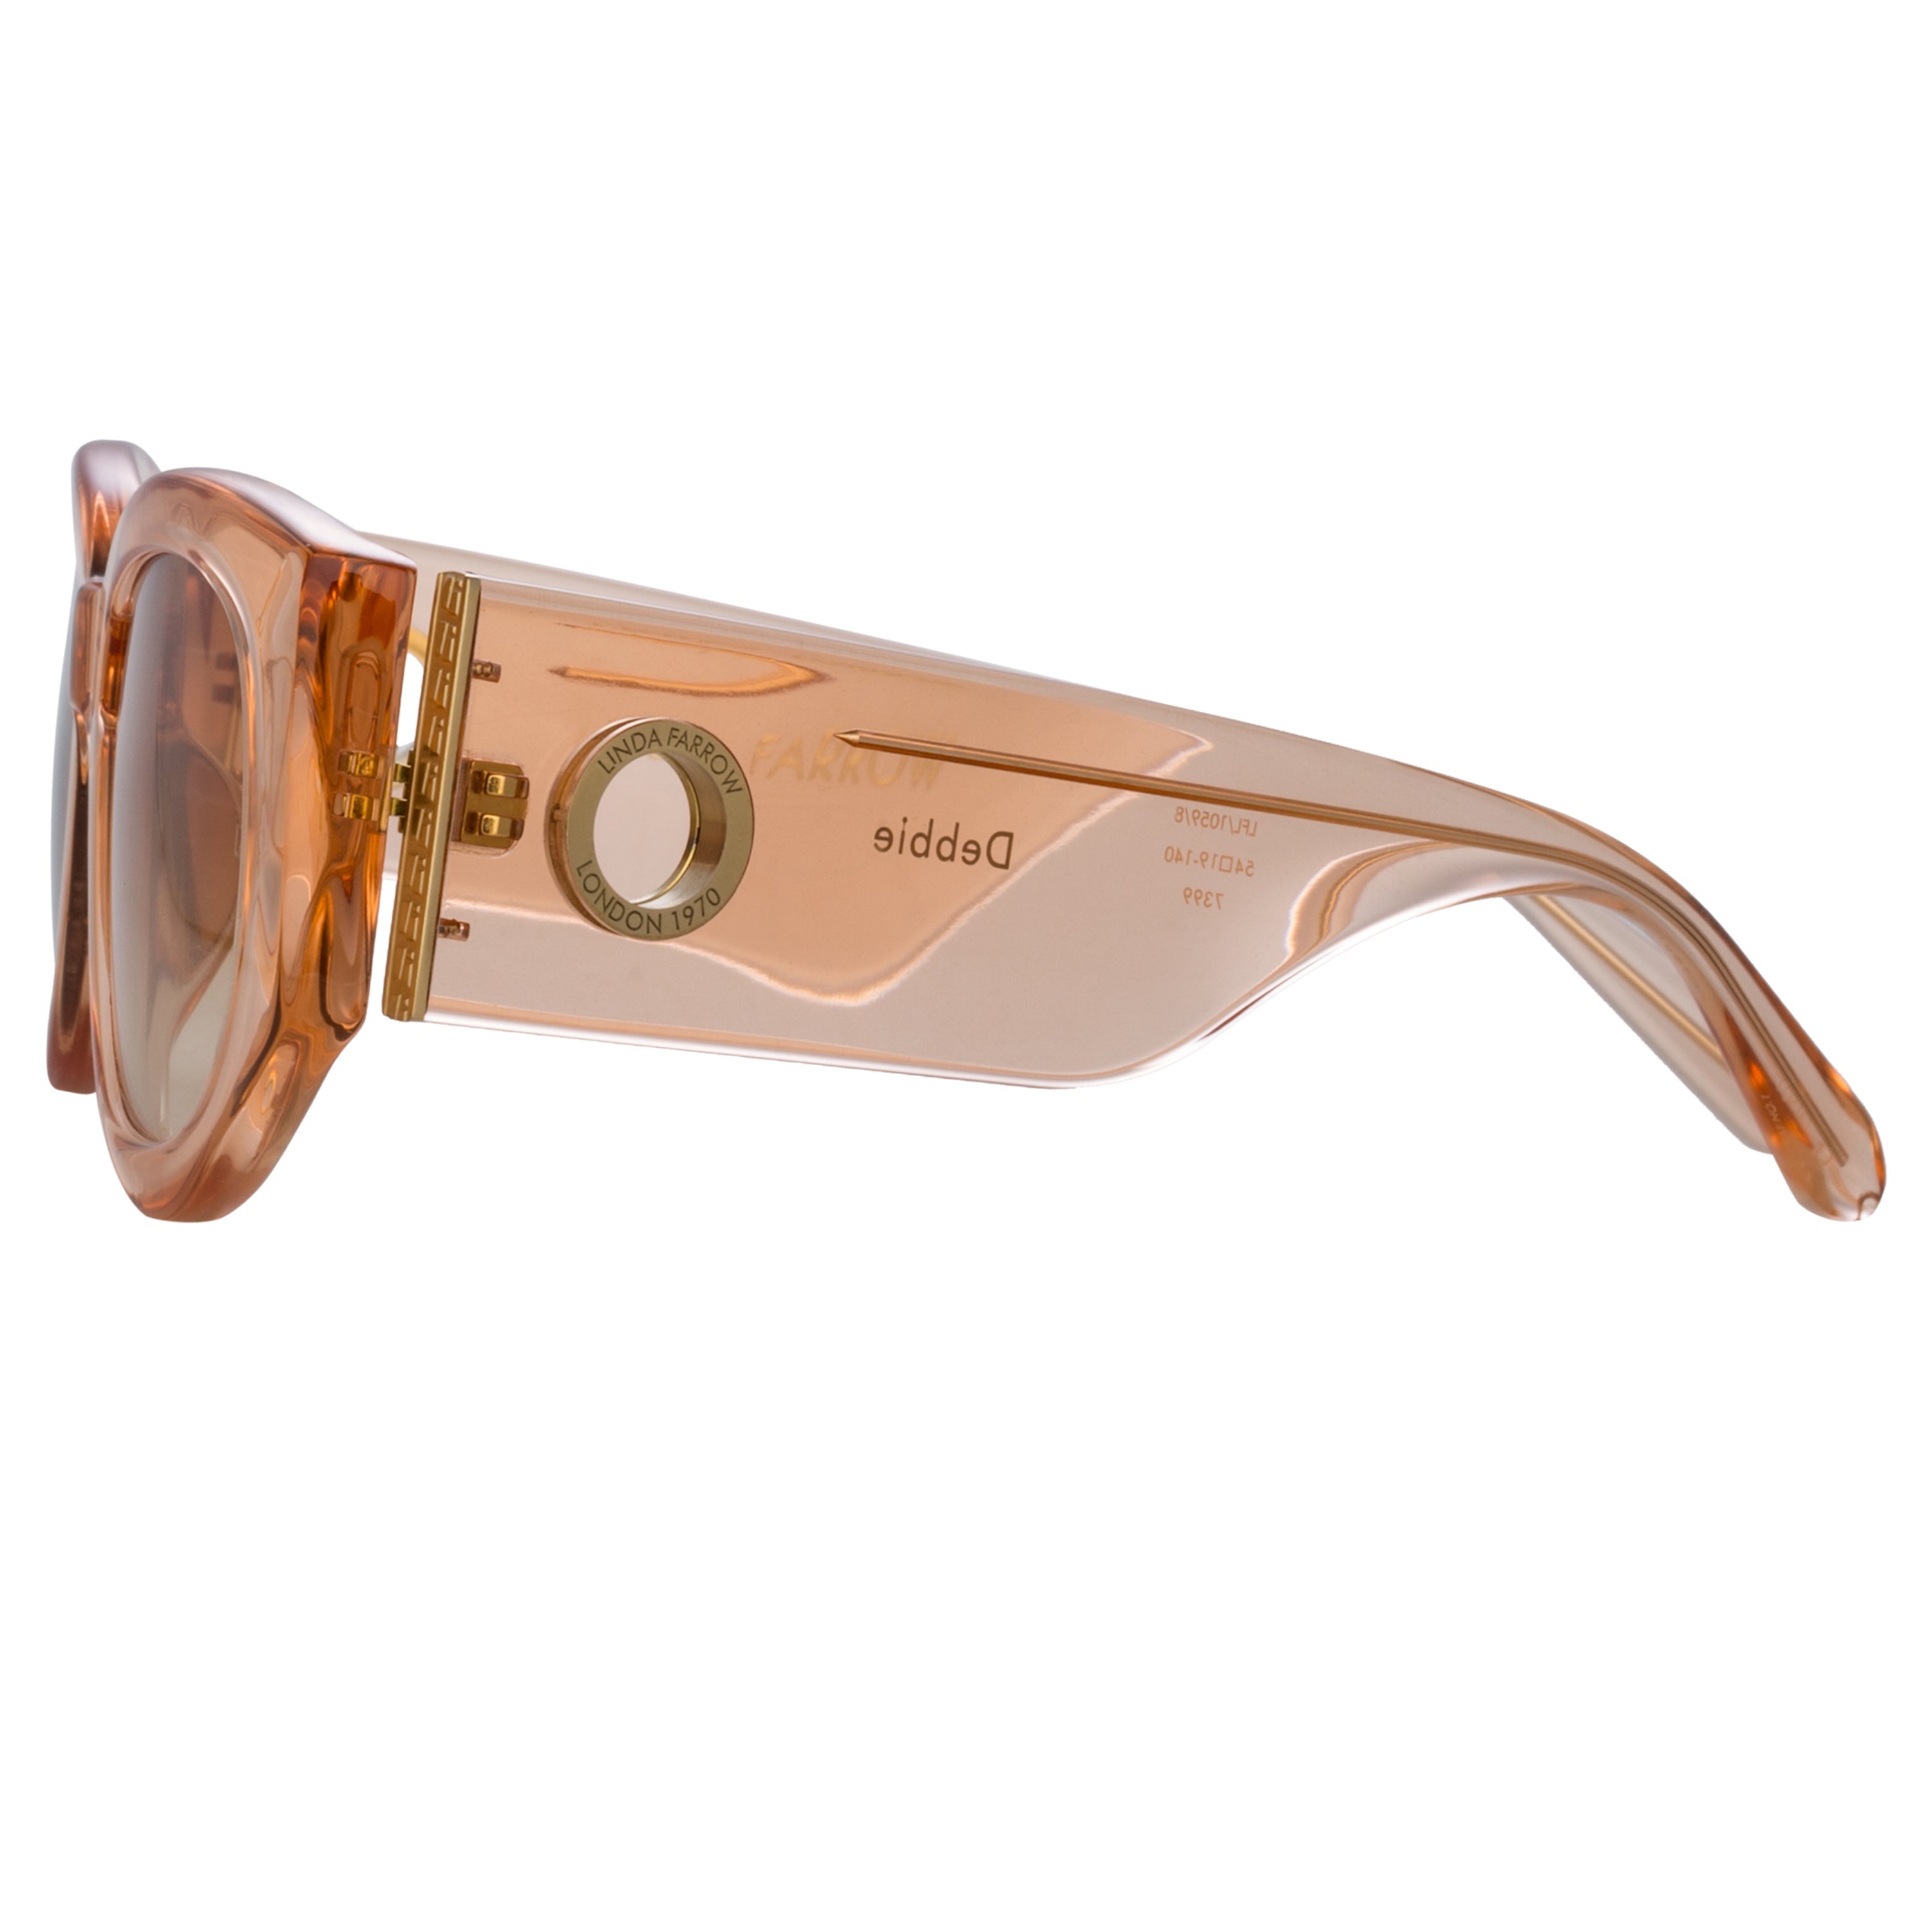 Color_LFL1059C8SUN - Debbie D-Frame Sunglasses in Peach